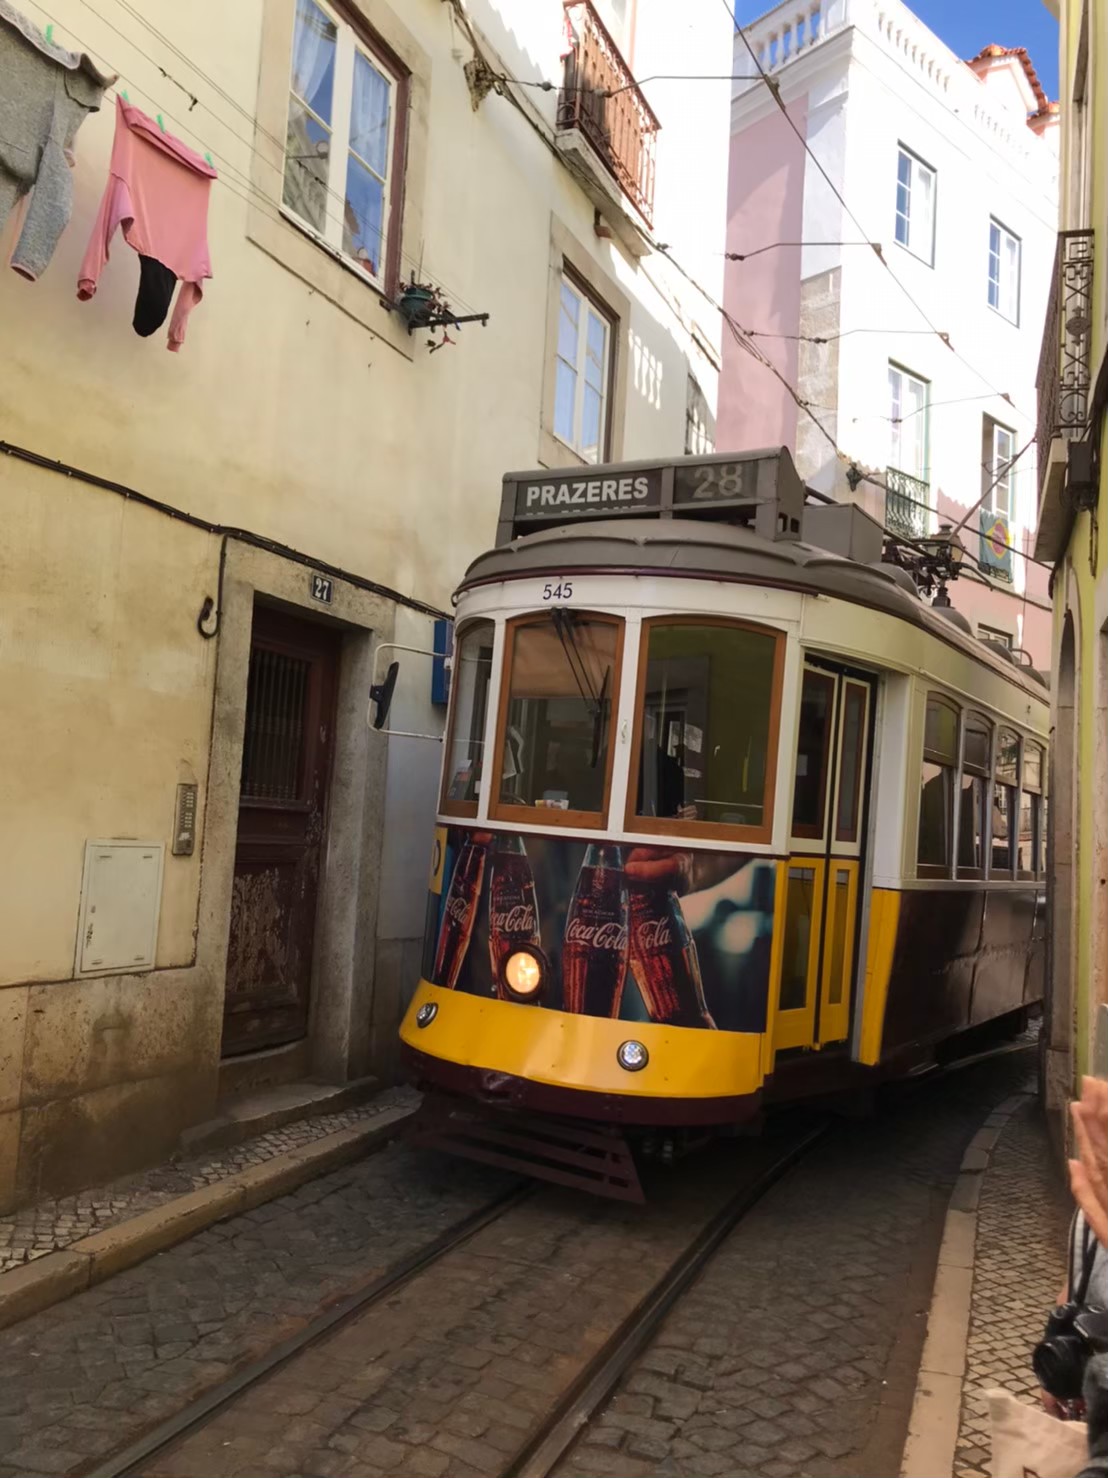 平岩さんを魅了したポルトガルの風景より。「リスボンの路面電車。この辺りは特に狭い場所で、歩行者や家をかすめるように電車が走っていきます」